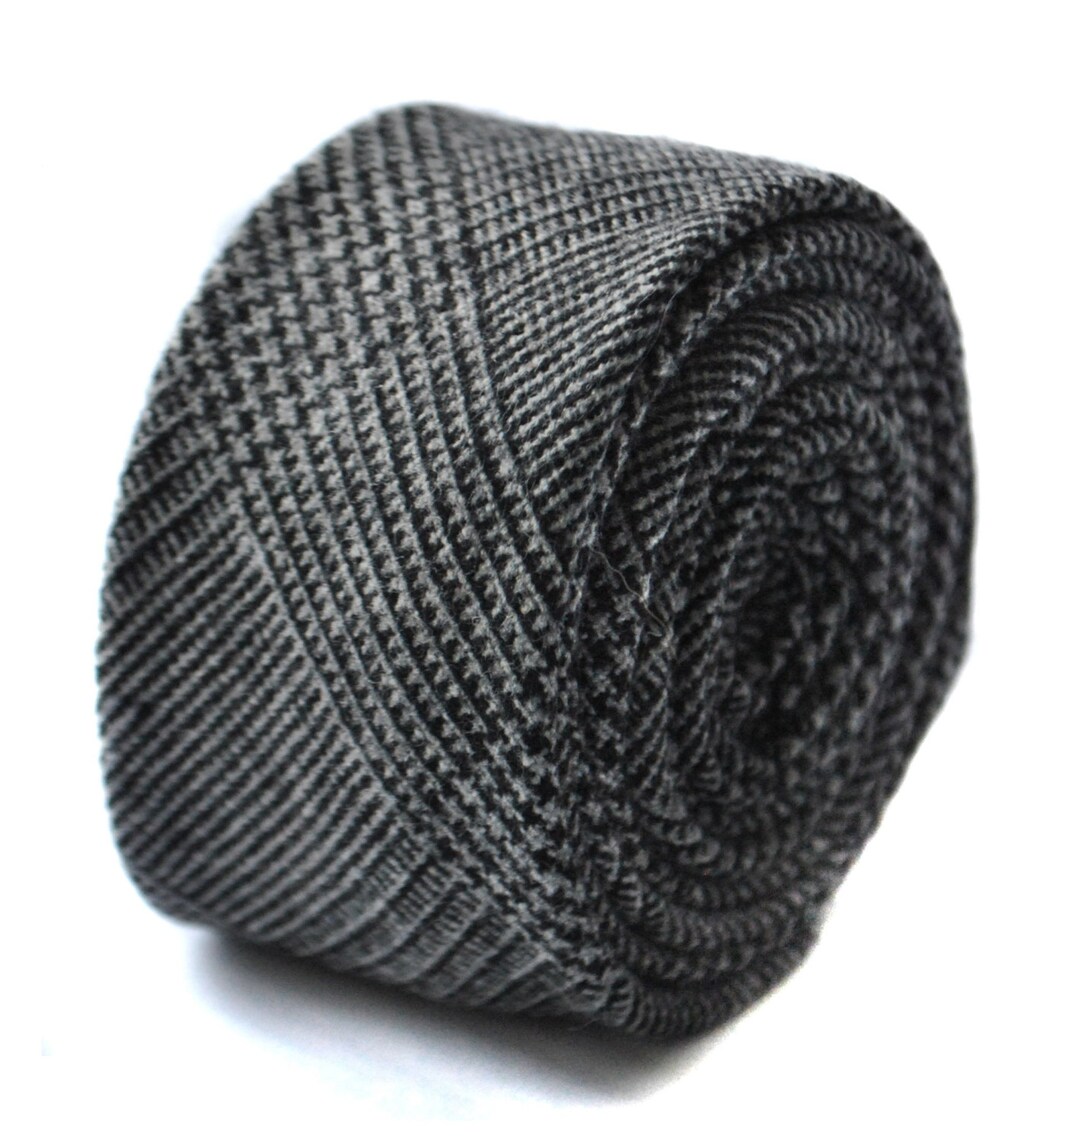 Black Tweed Wool Skinny Tie by Frederick Thomas FT1636 - Etsy